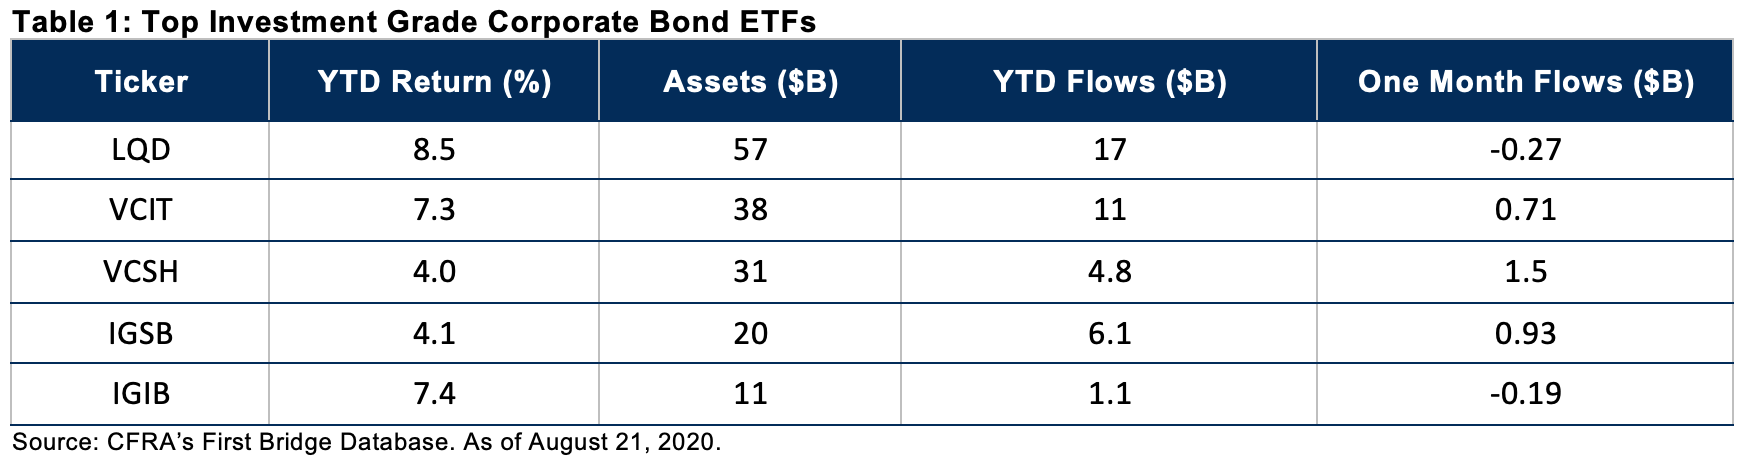 rosenbluth-investment-bonds.png